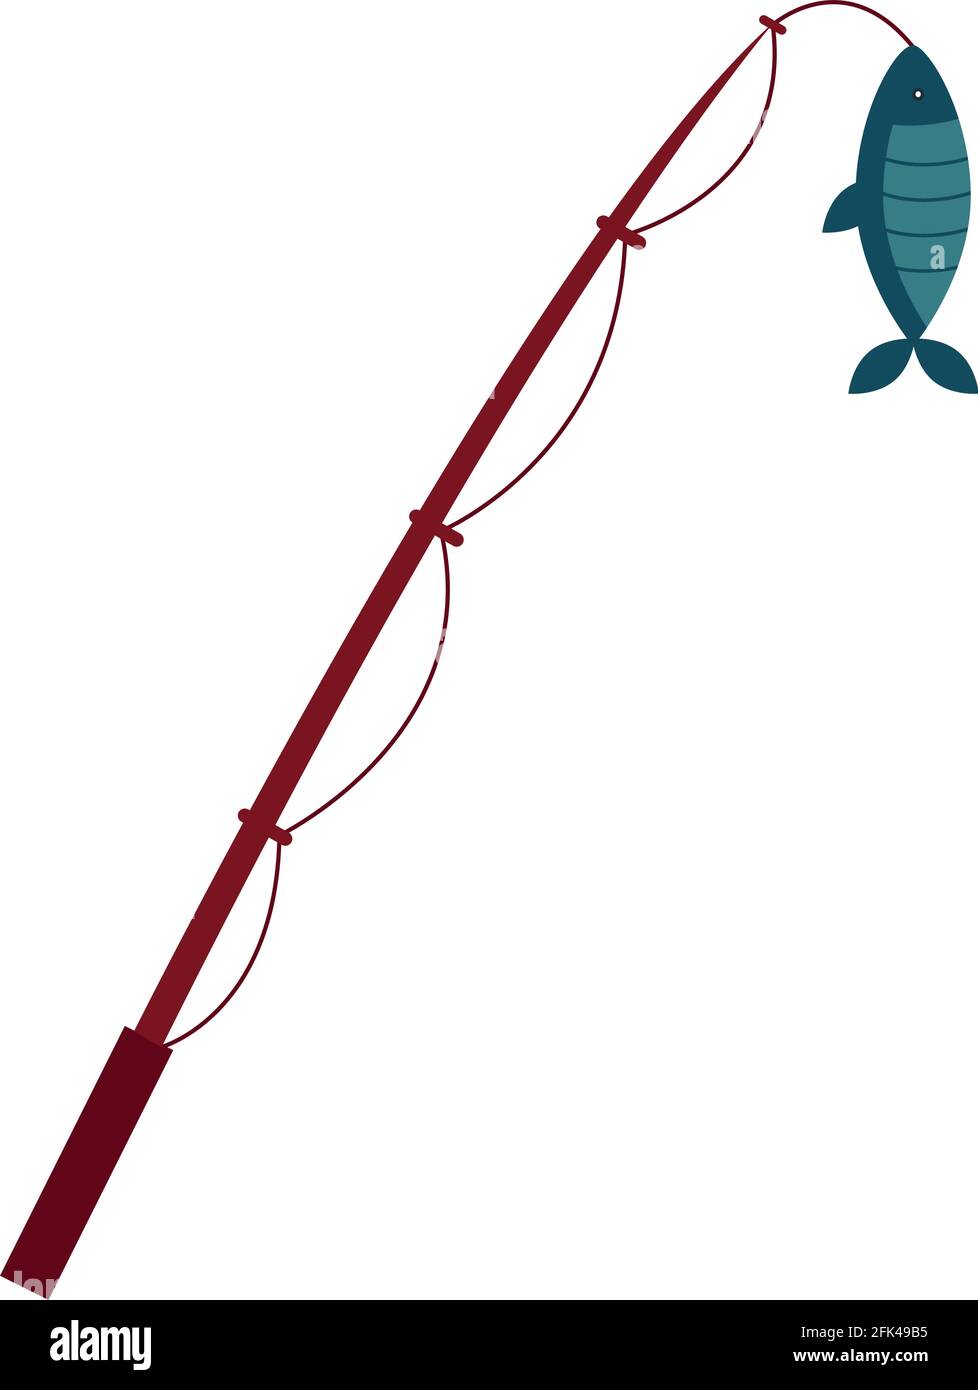 disegno della canna da pesca Immagine e Vettoriale - Alamy